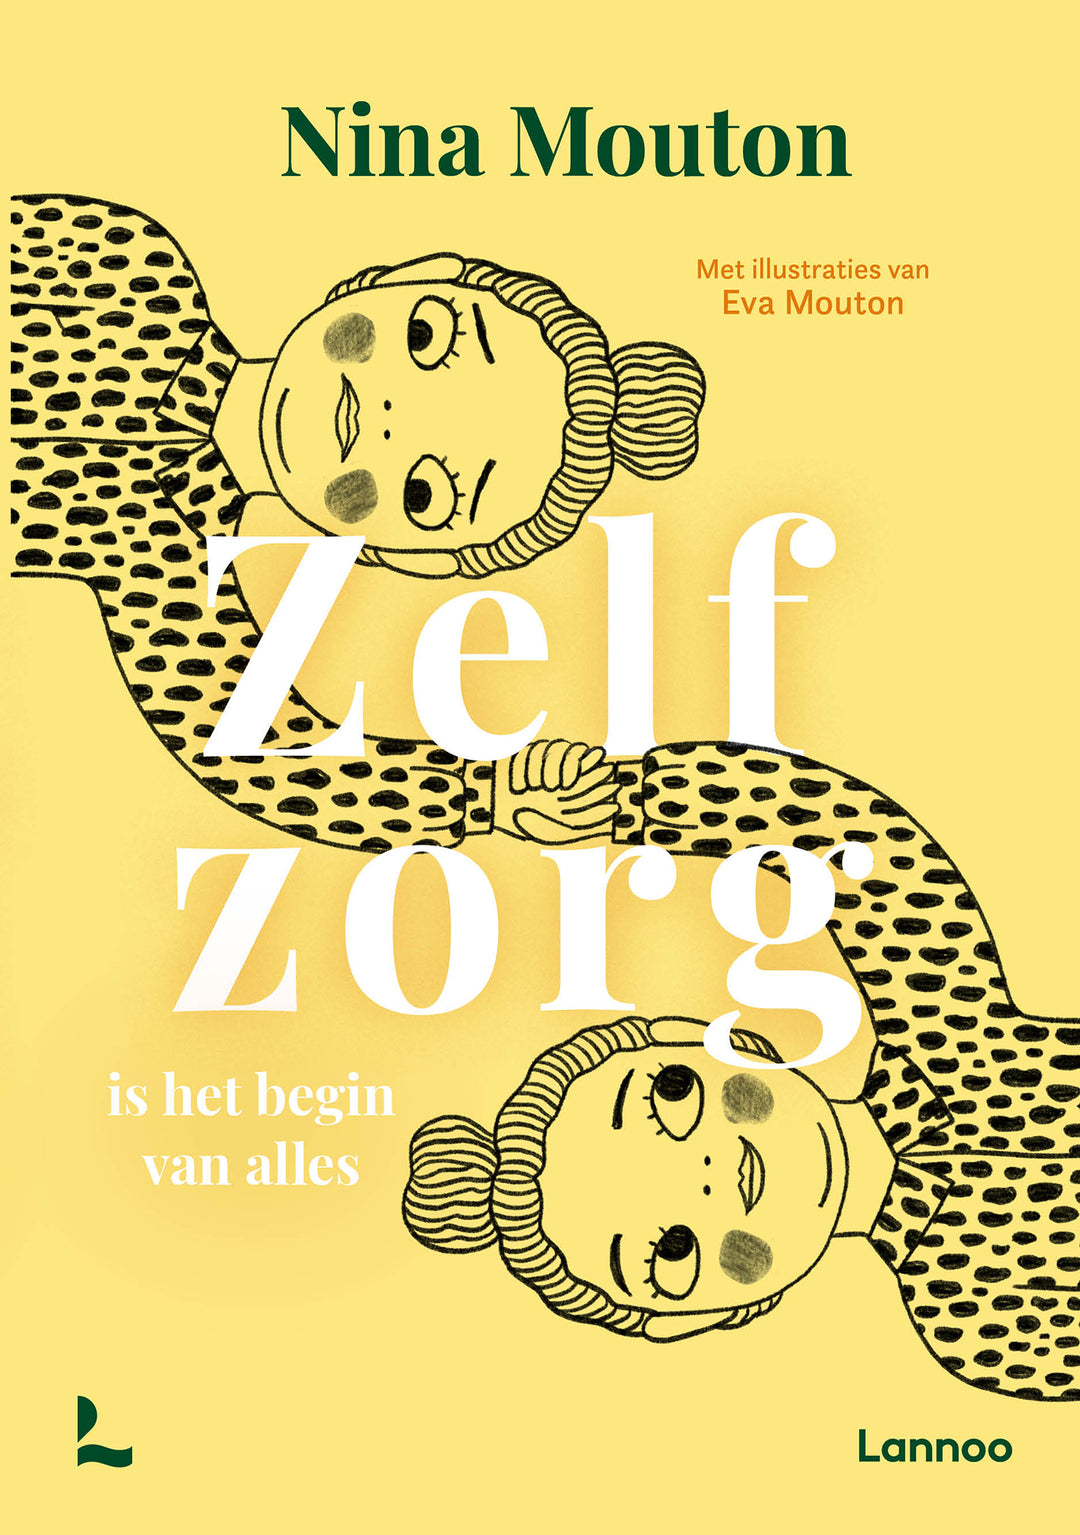 Cover van 'Zelfzorg Is Het Begin Van Alles' door Nina Mouton, een boek over zelfzorg en persoonlijke groei